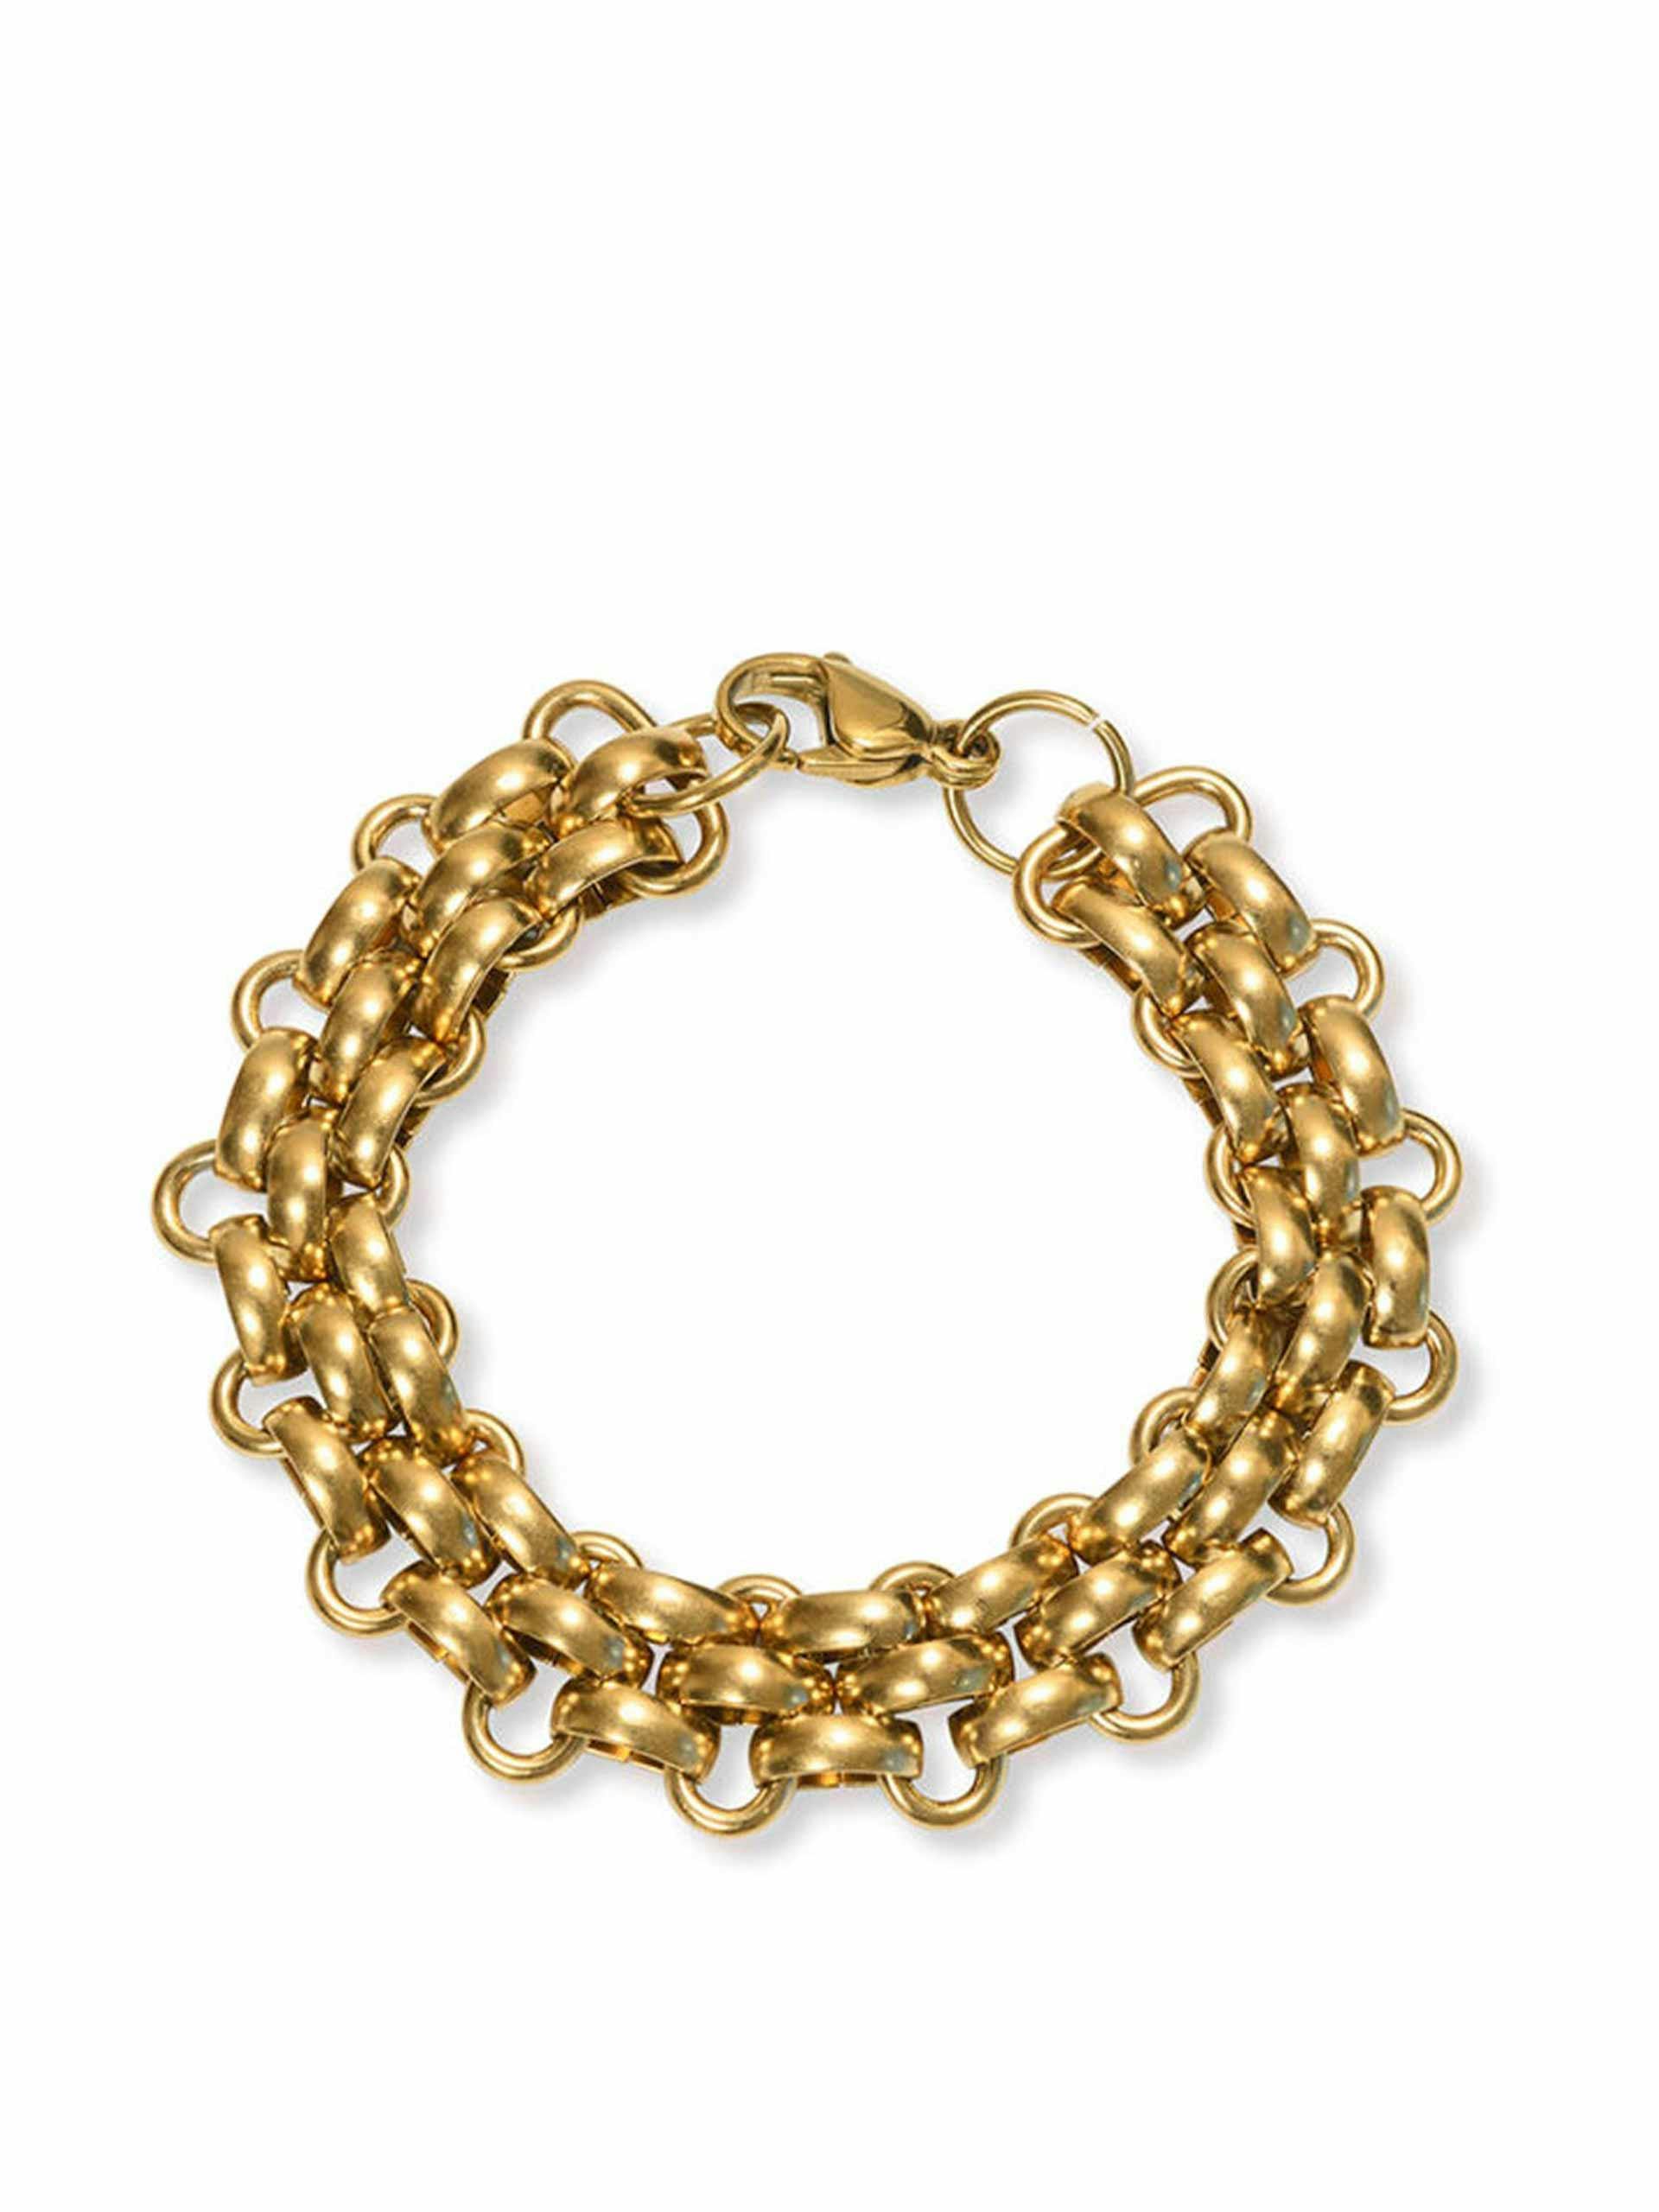 Knit gold bracelet